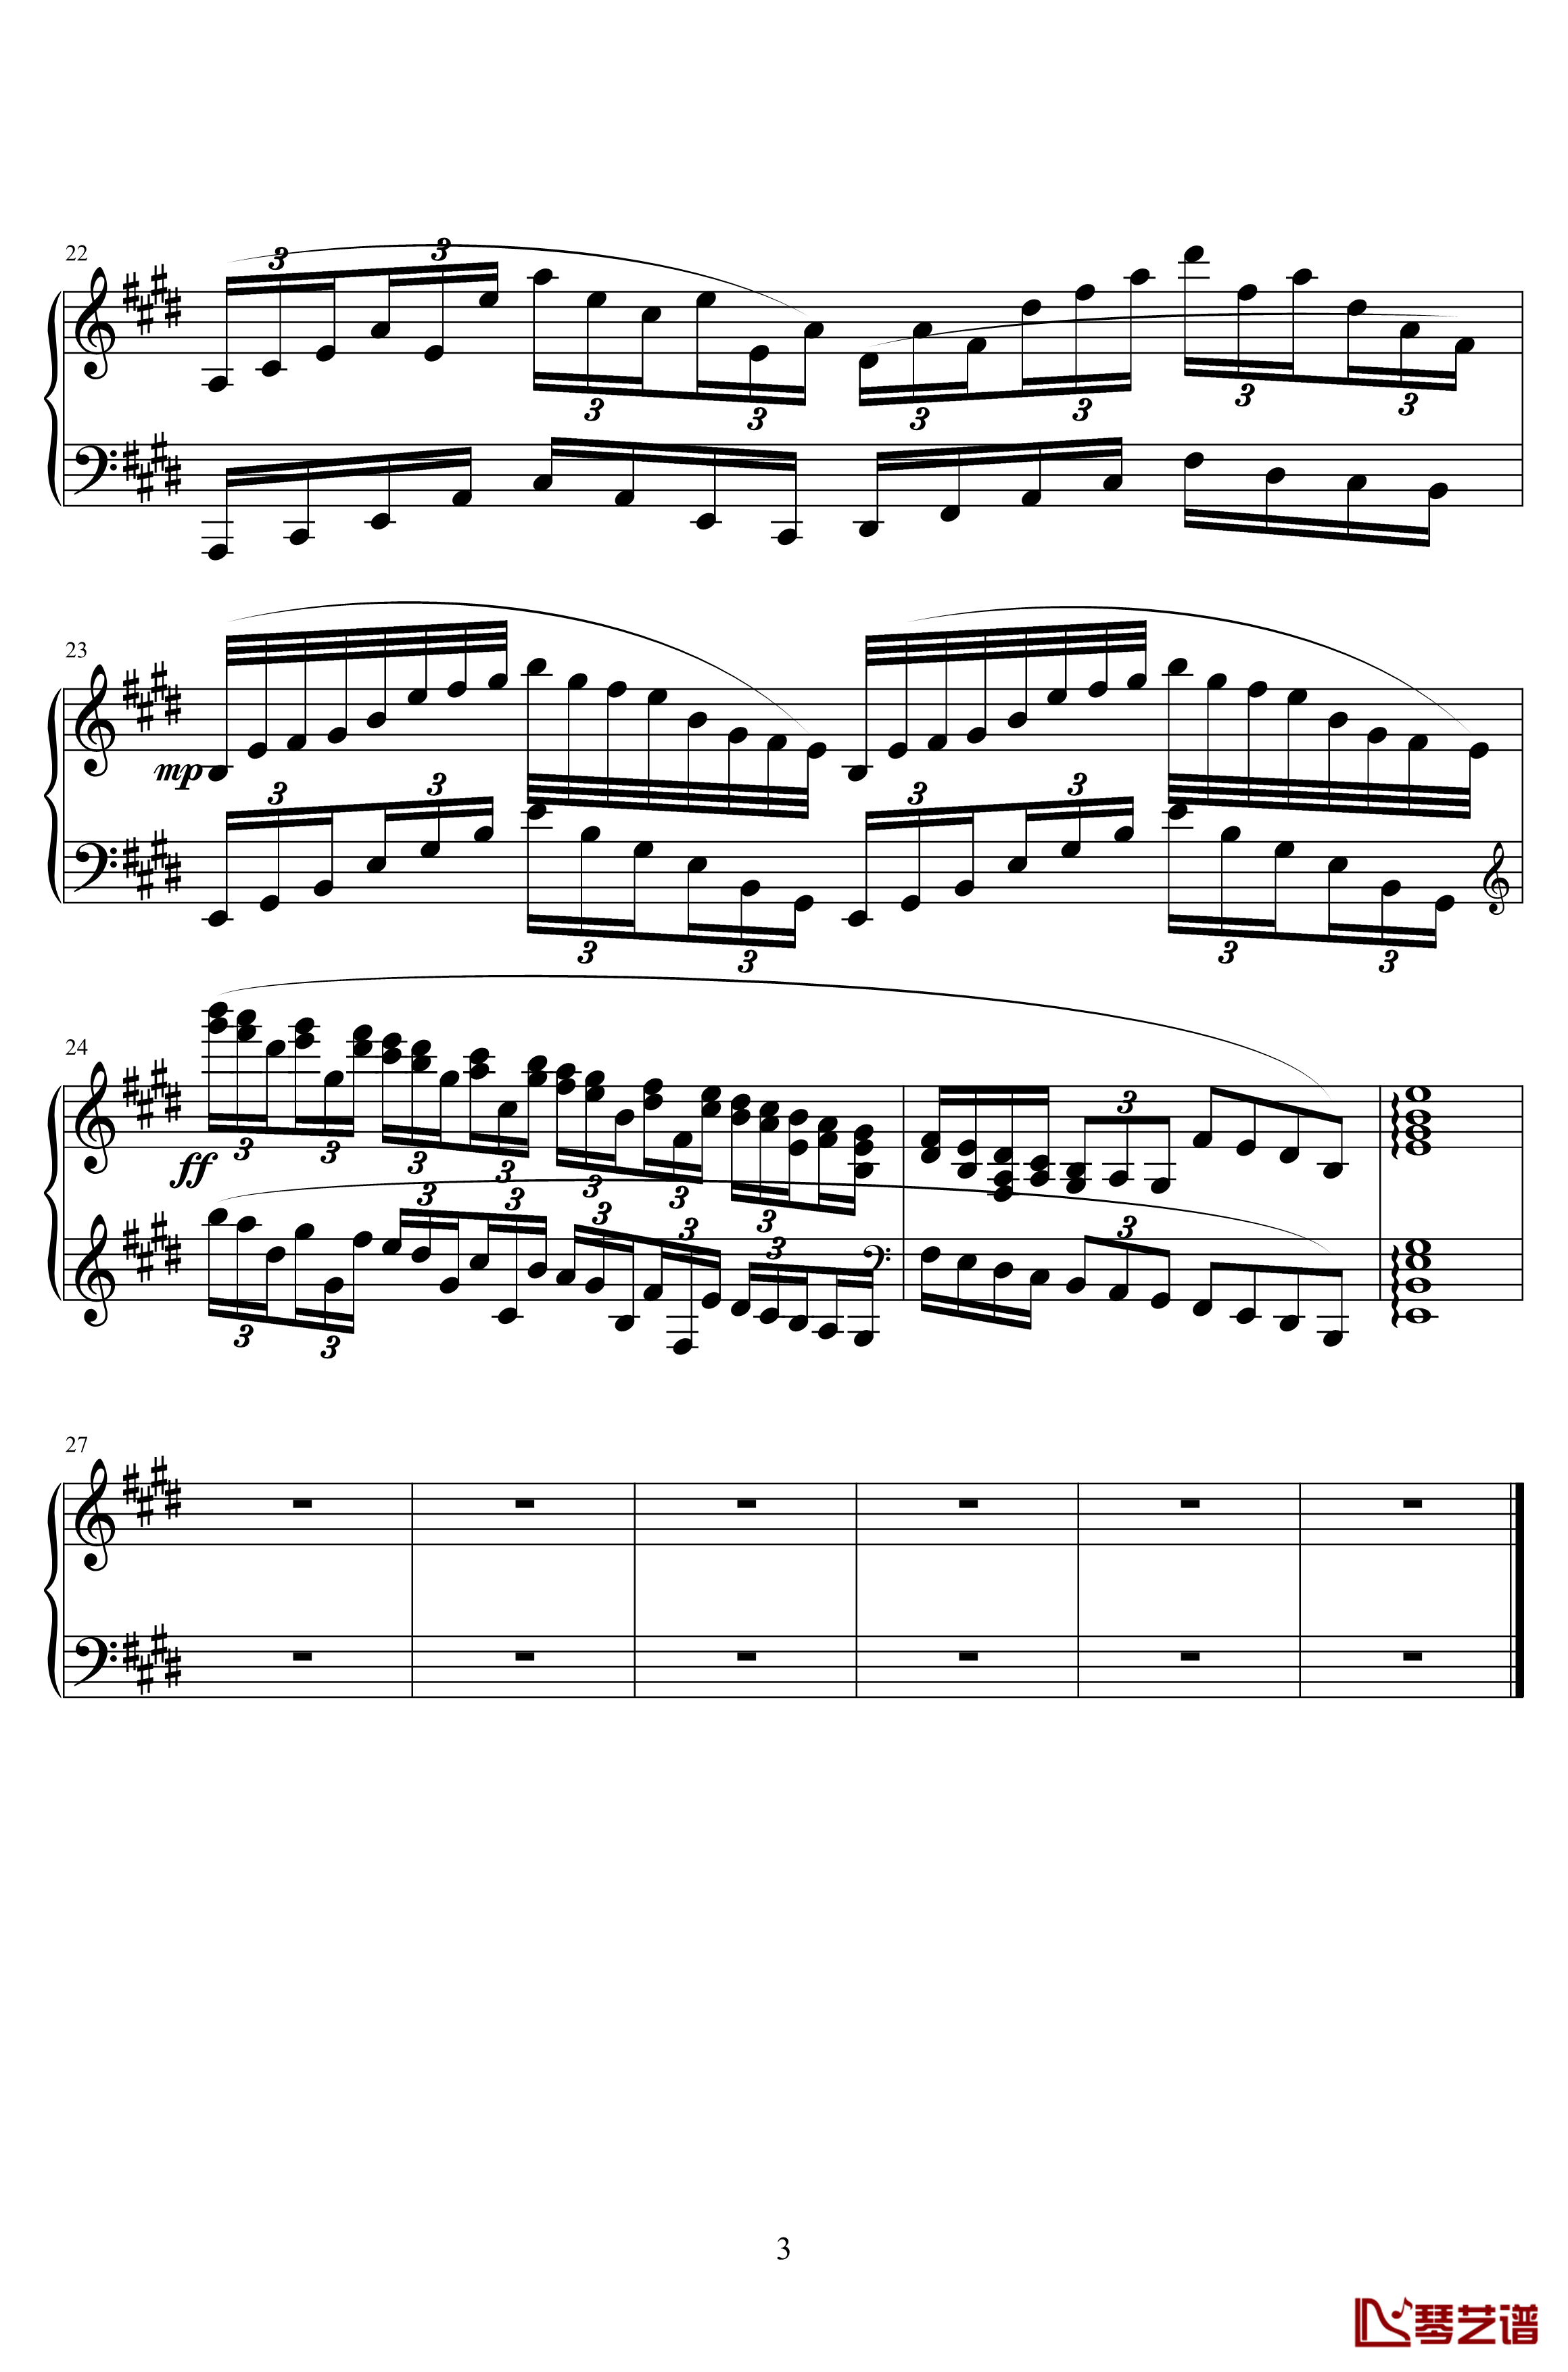 海洋钢琴谱-练习曲第一首-hrmc3